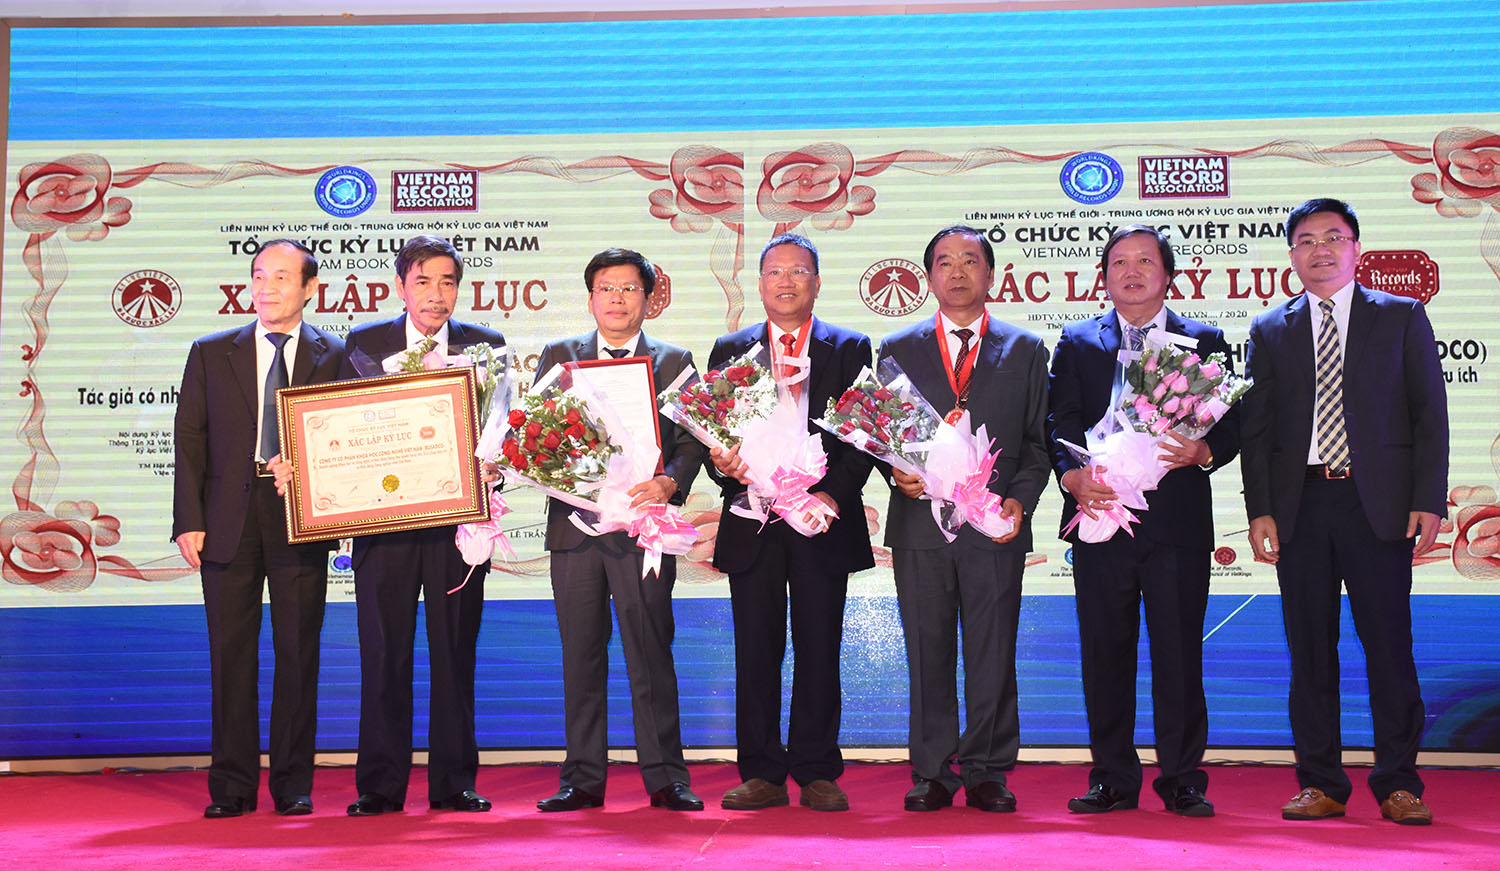 Đại diện Tổ chức Kỷ lục Việt Nam và Hội Kỷ lục gia Việt Nam trao chứng nhận kỷ lục Việt Nam cho tập thể Busadco.